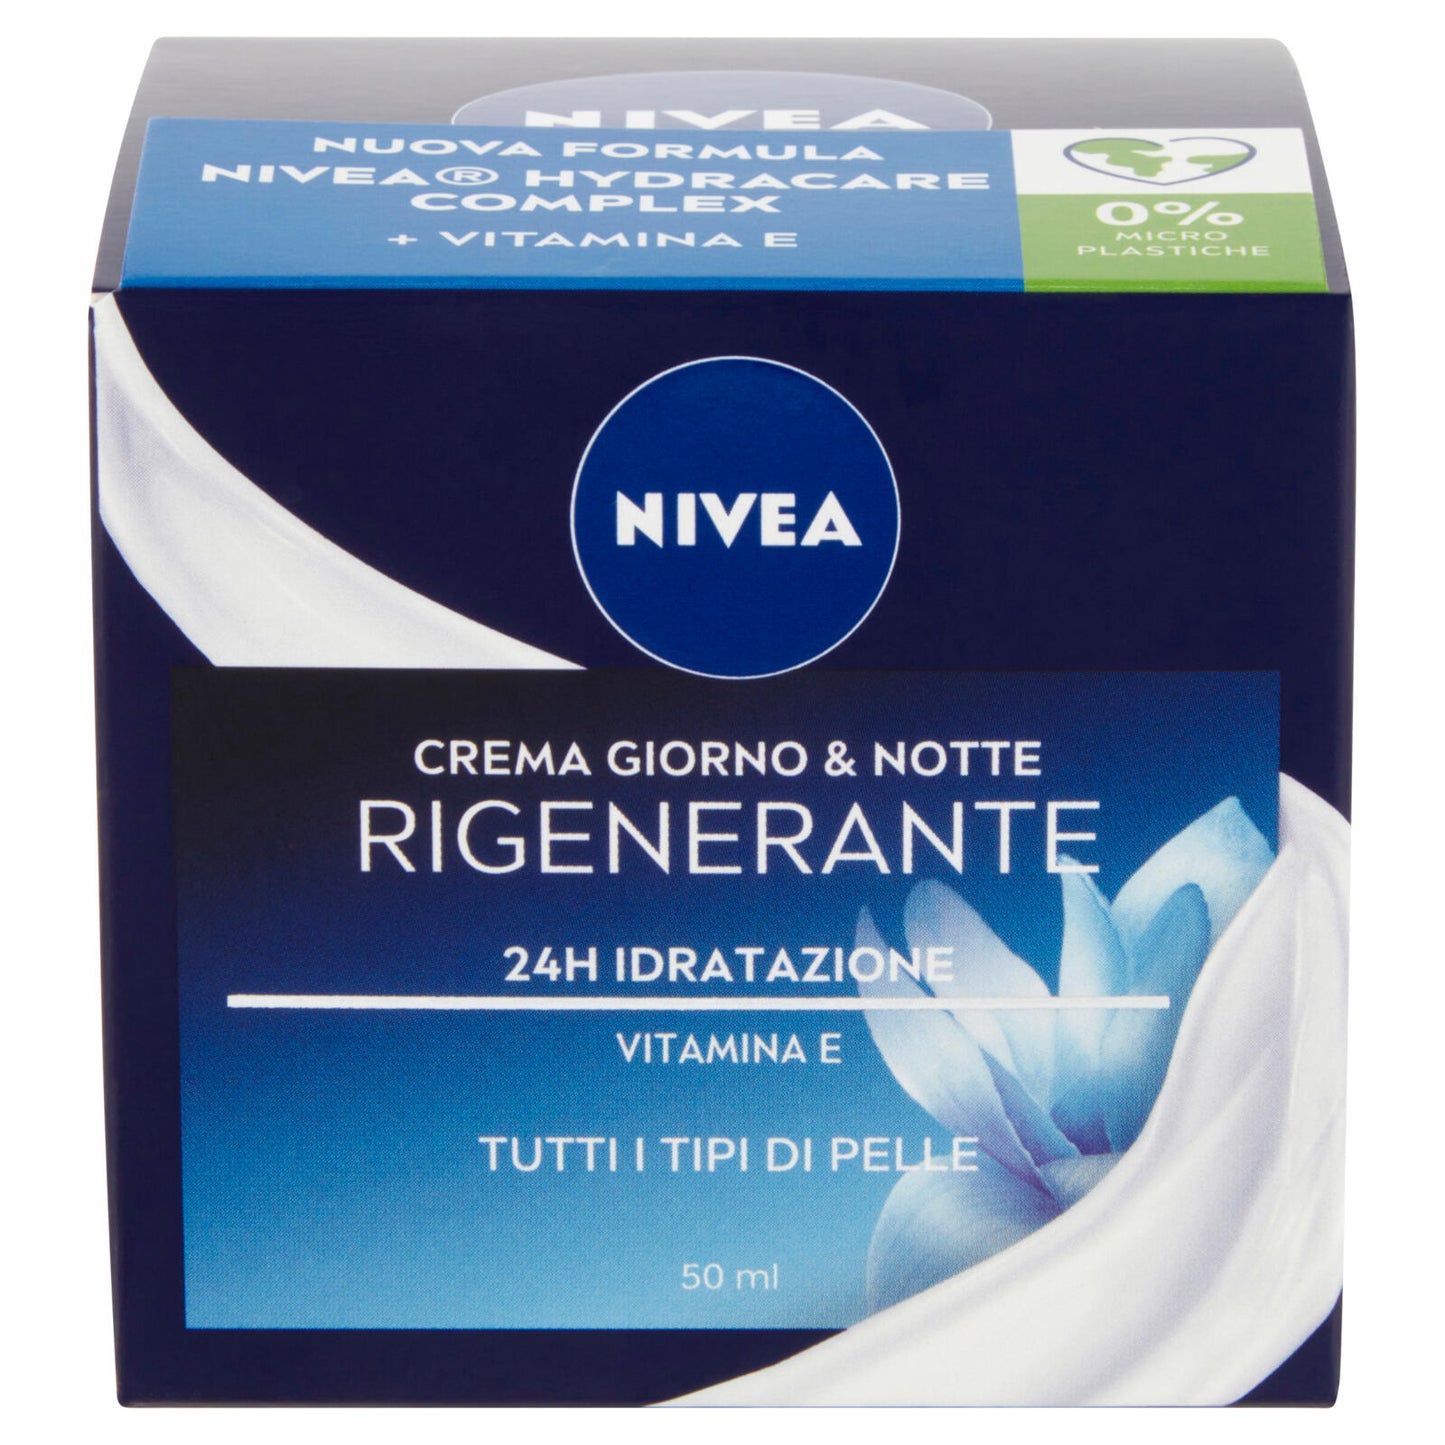 Nivea Crema Giorno & Notte Rigenerante 24H Idratazione 50 ml